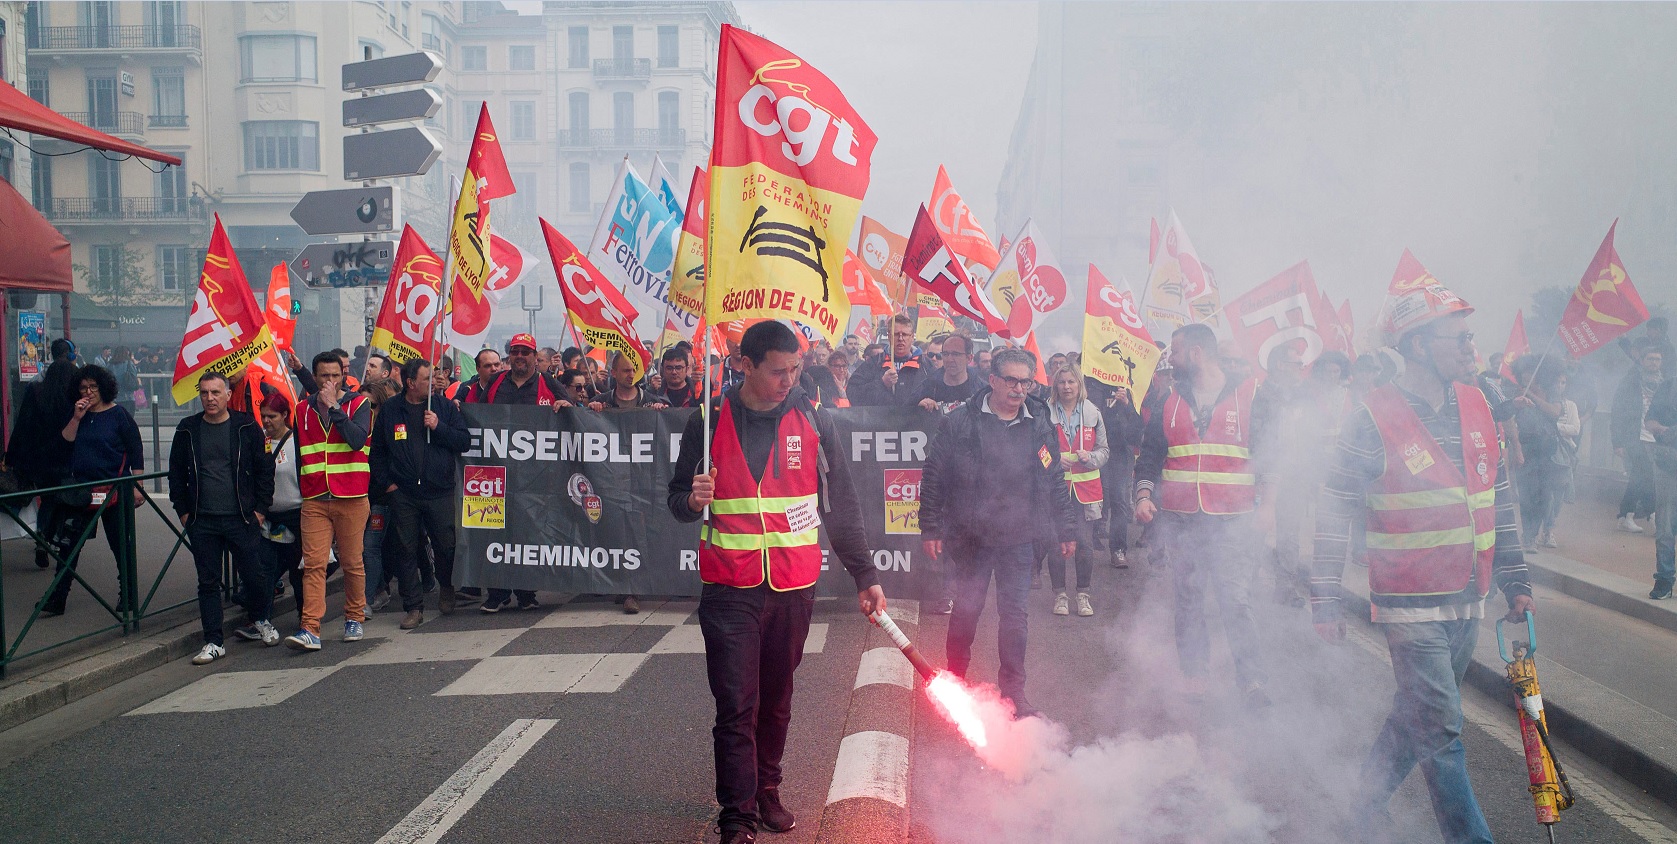 Estiman en 123 mdd pérdidas por huelga ferroviaria en Francia